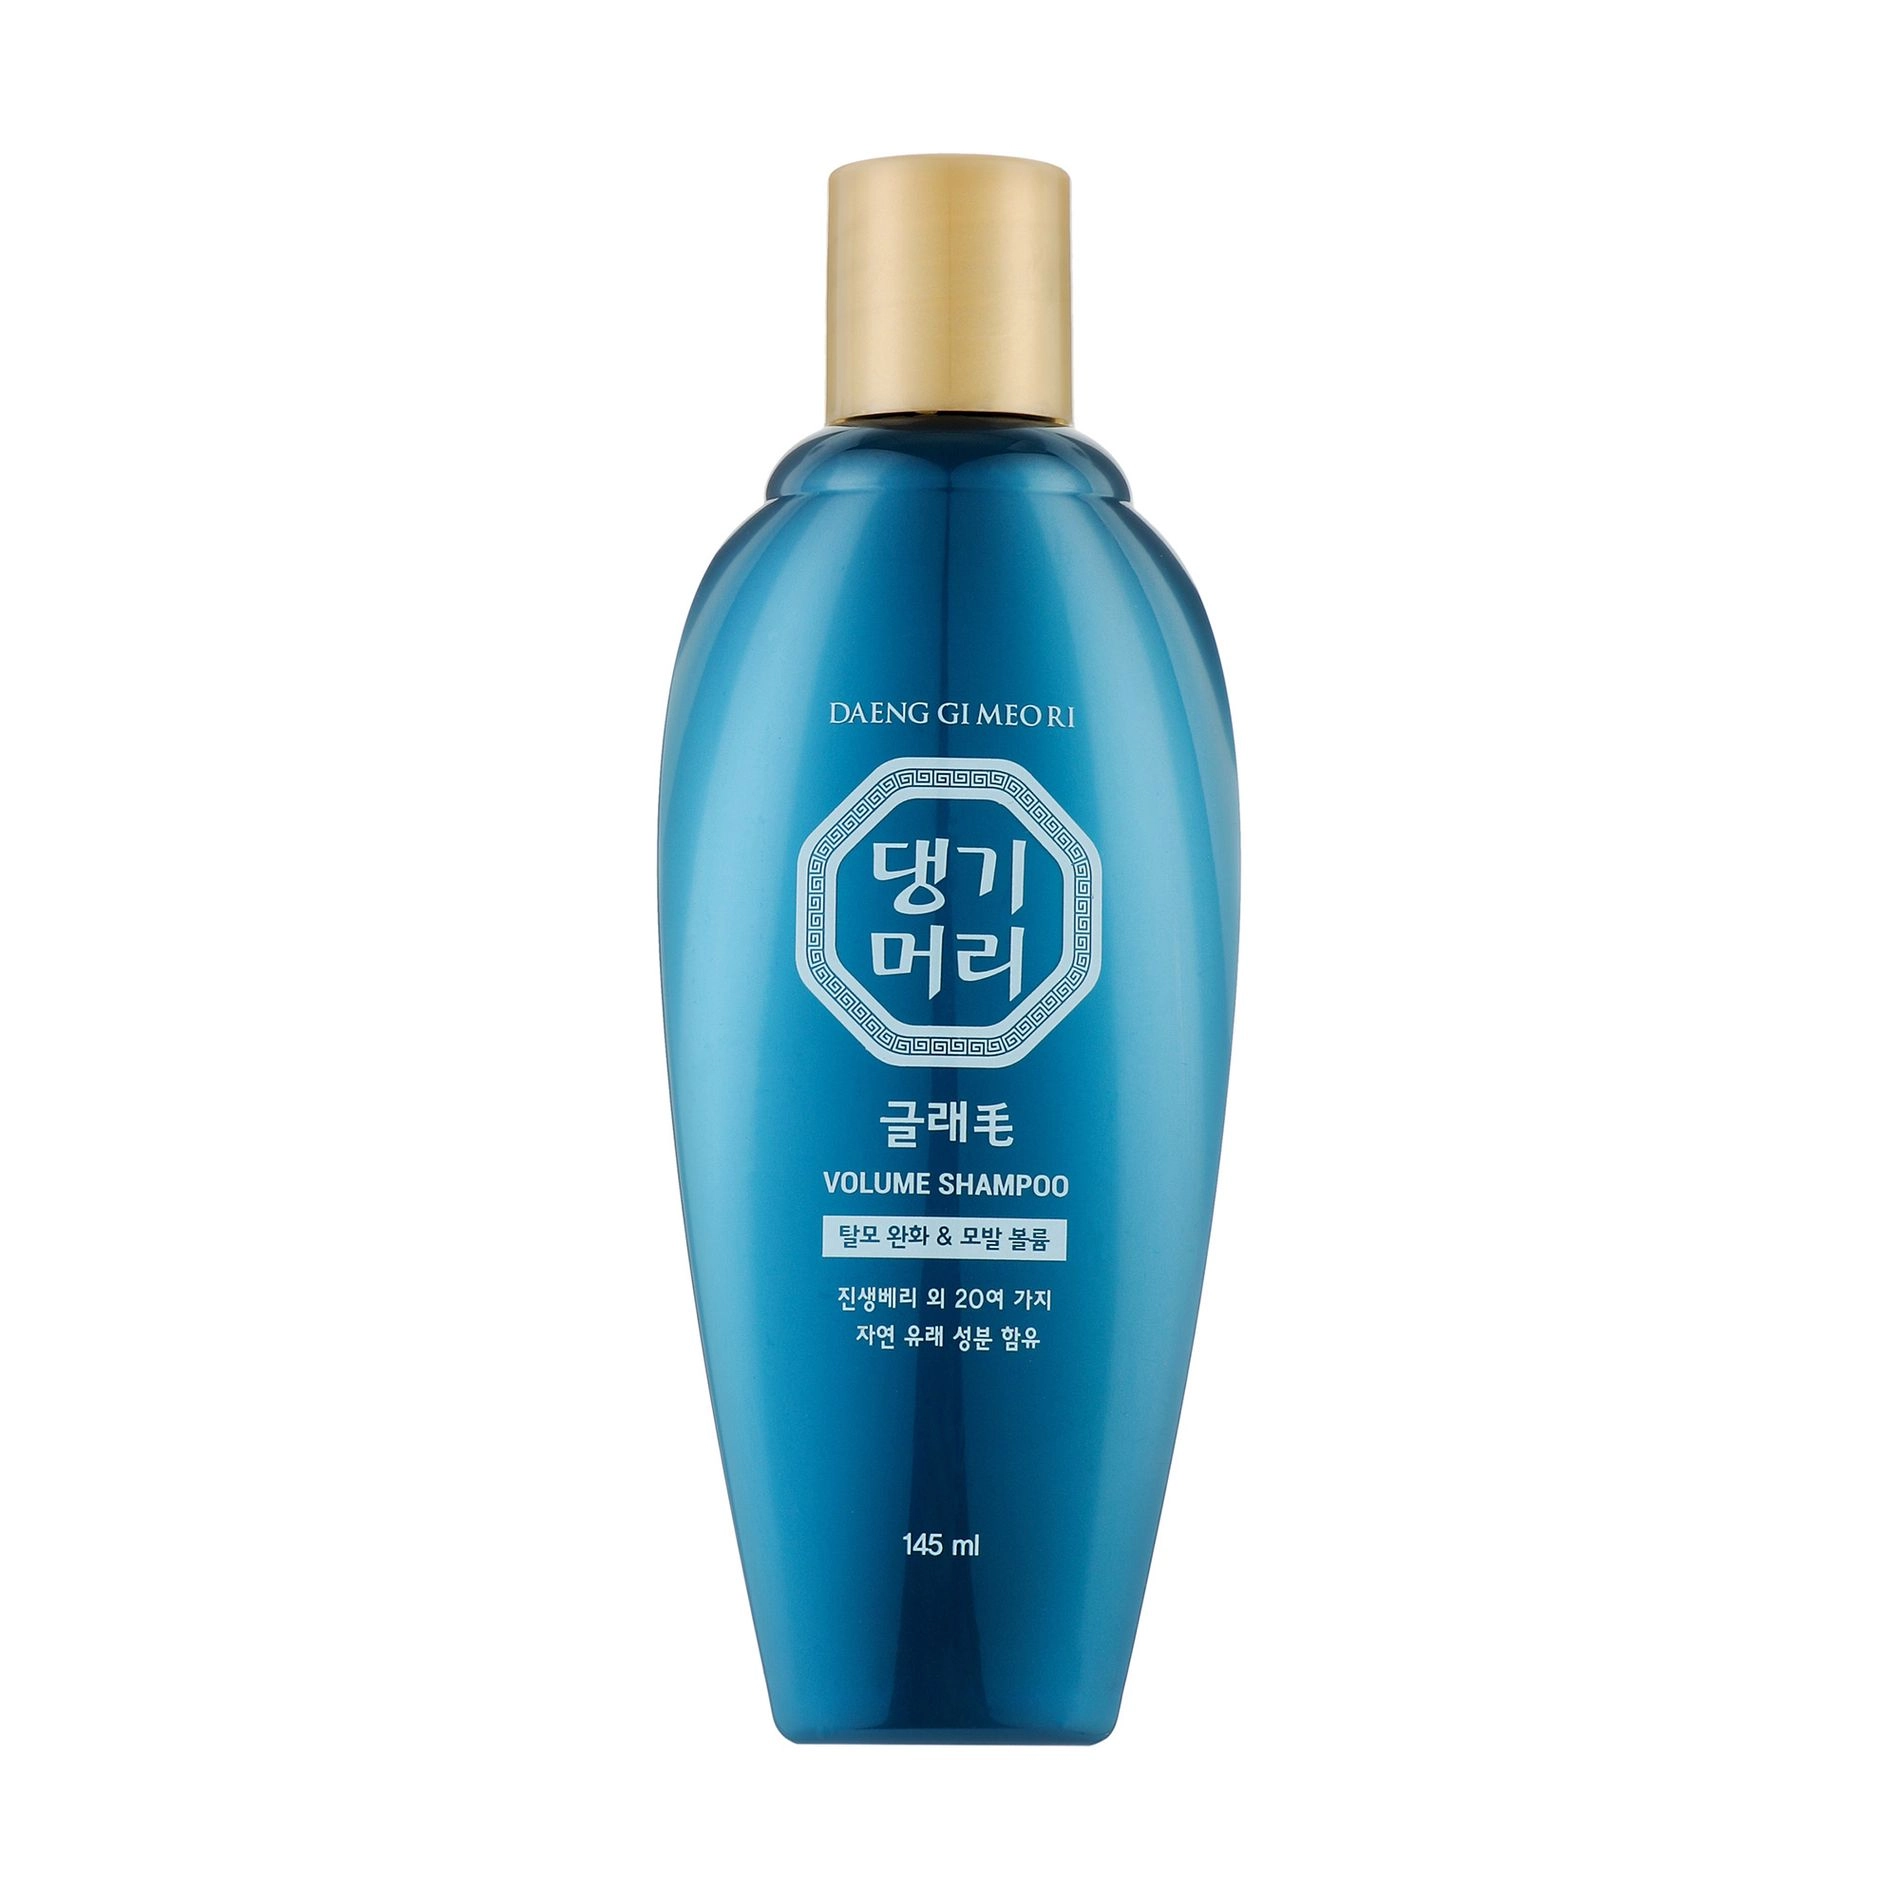 Шампунь для об'єму волосся - Daeng Gi Meo Ri Glamorous Volume Shampoo, 145 мл - фото N3